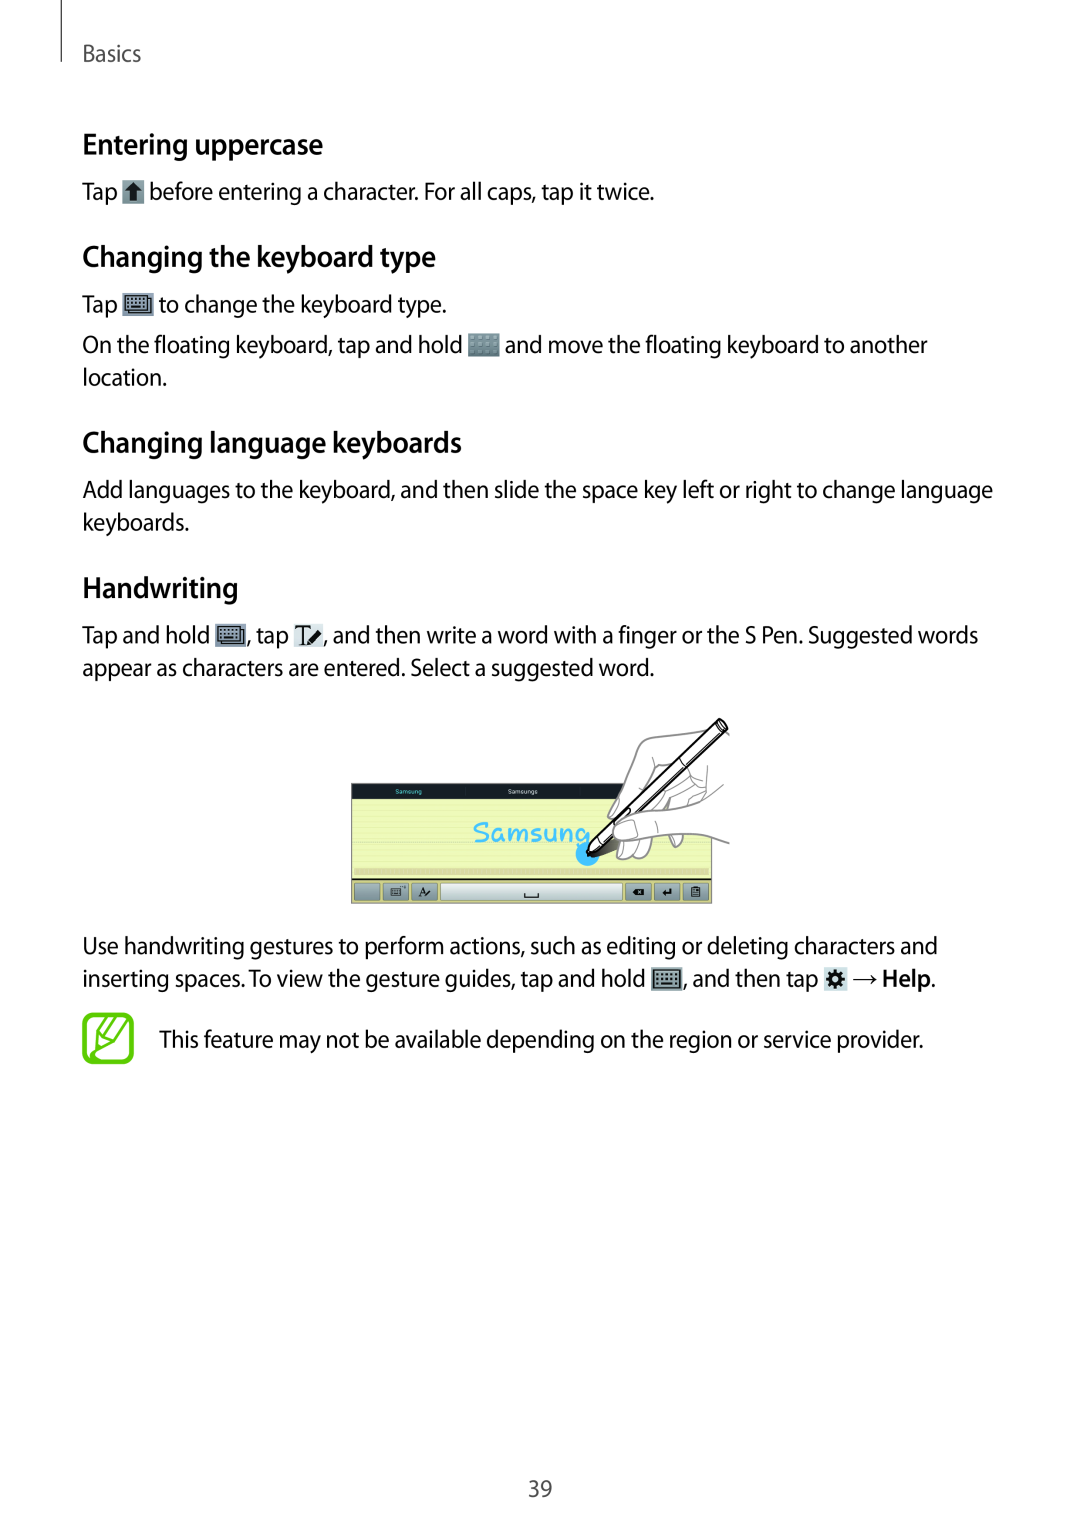 Samsung SM-P6000ZKASEB Entering uppercase, Changing the keyboard type, Changing language keyboards, Handwriting, Basics 